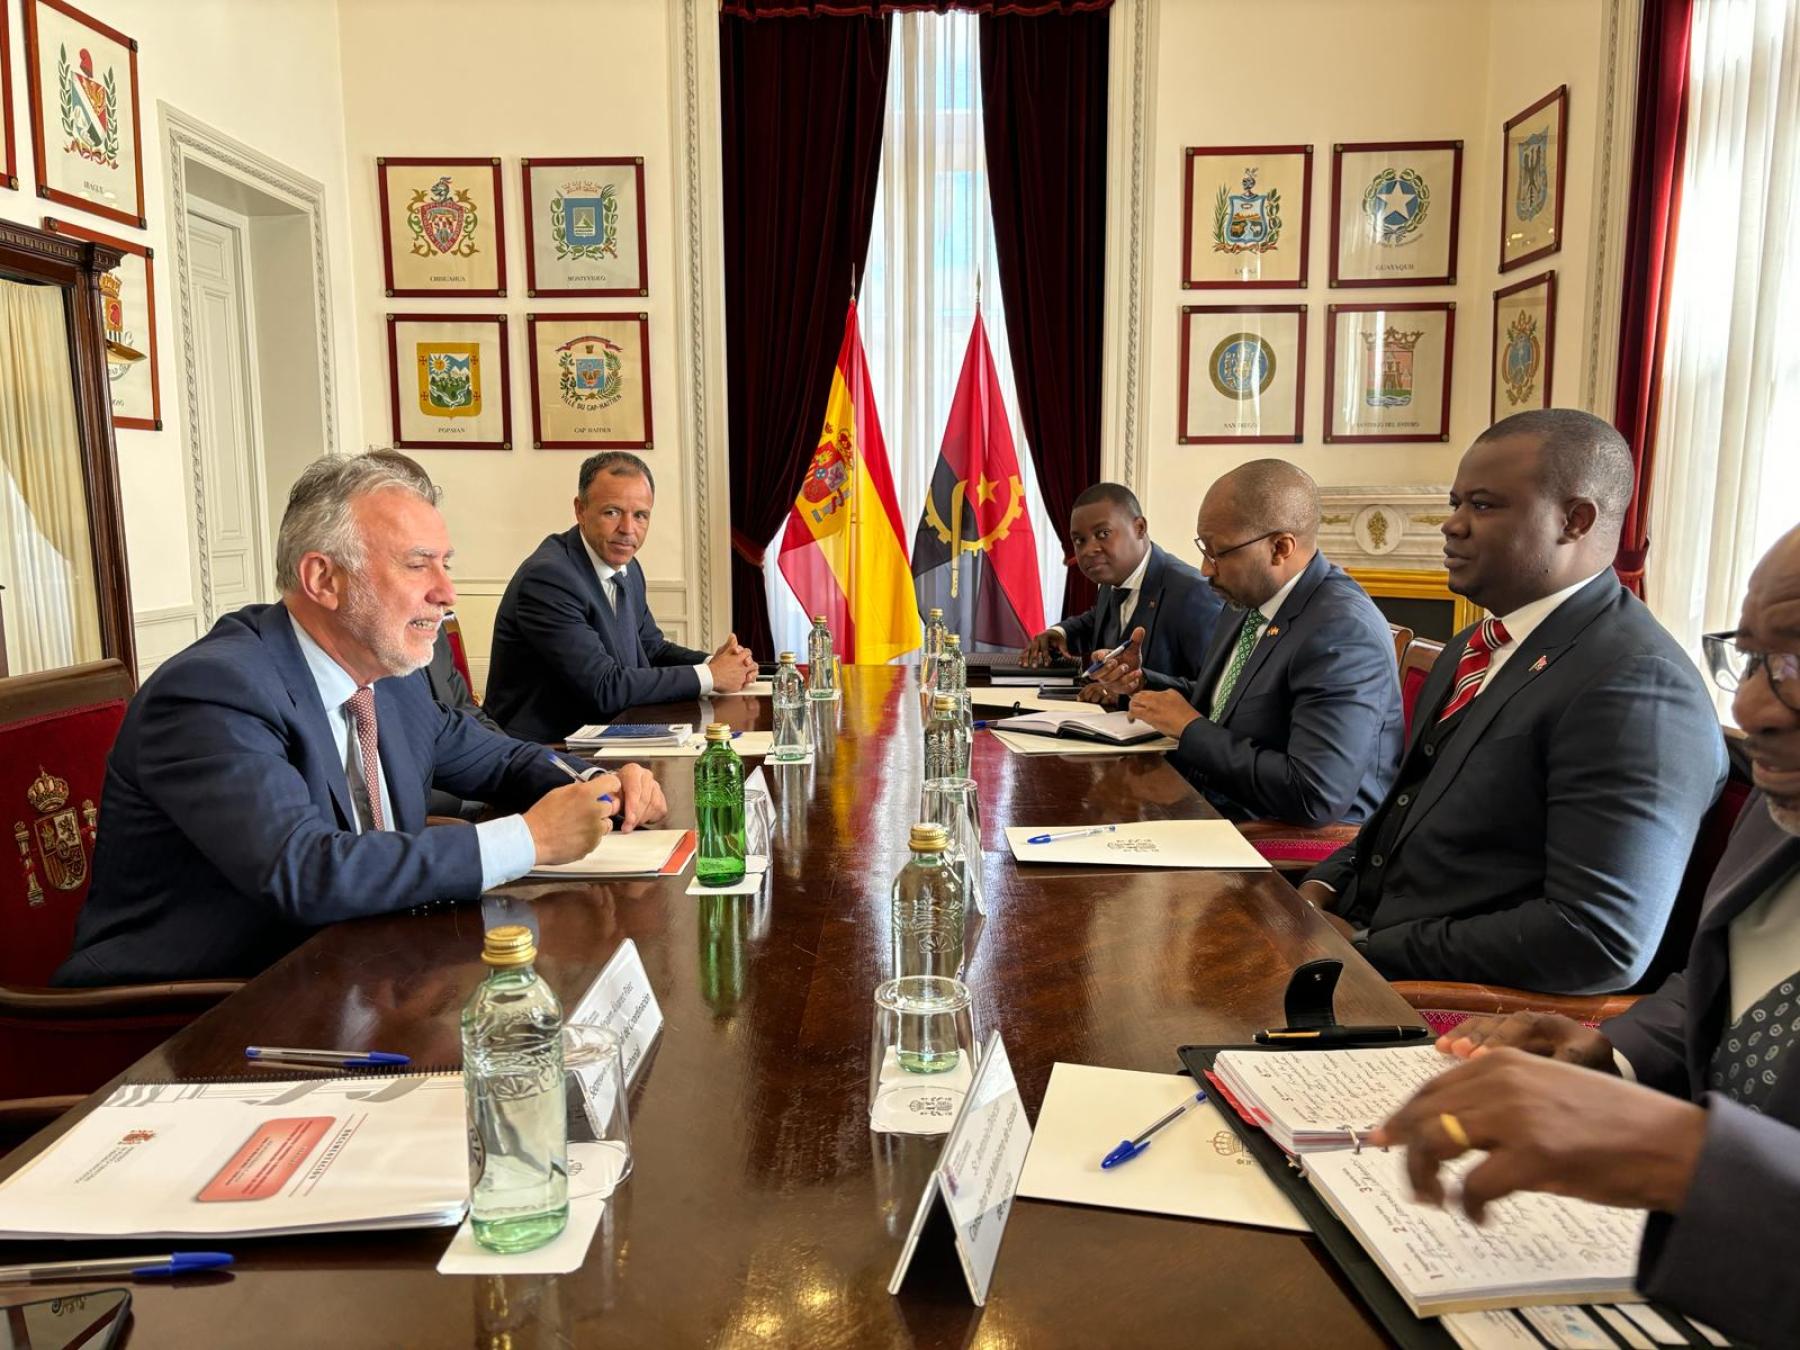 Torres se reúne con el ministro de Administración Territorial de Angola para intercambiar información sobre el proceso de descentralización del país africano